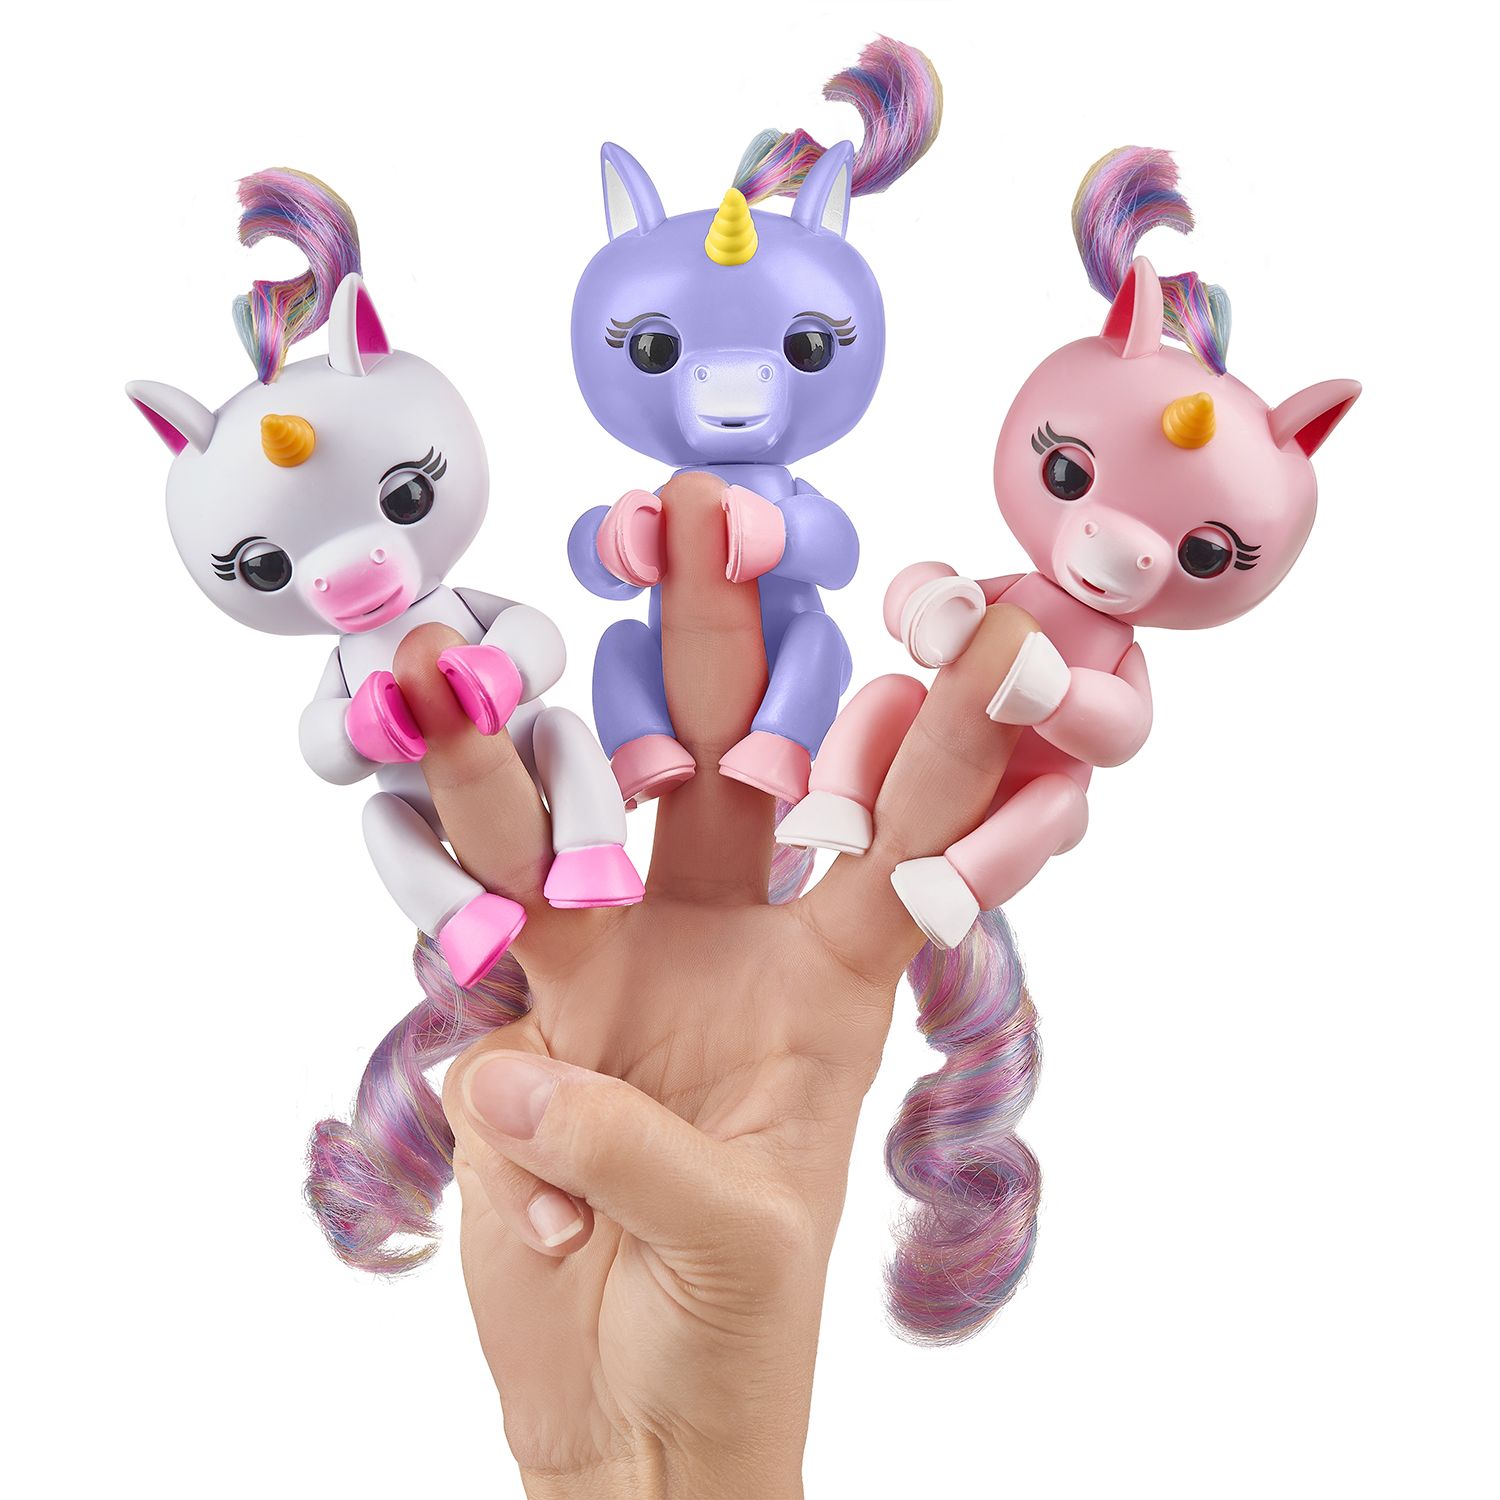 The new Fingerlings unicorns, from left: Gigi, Alika, and Gemma.